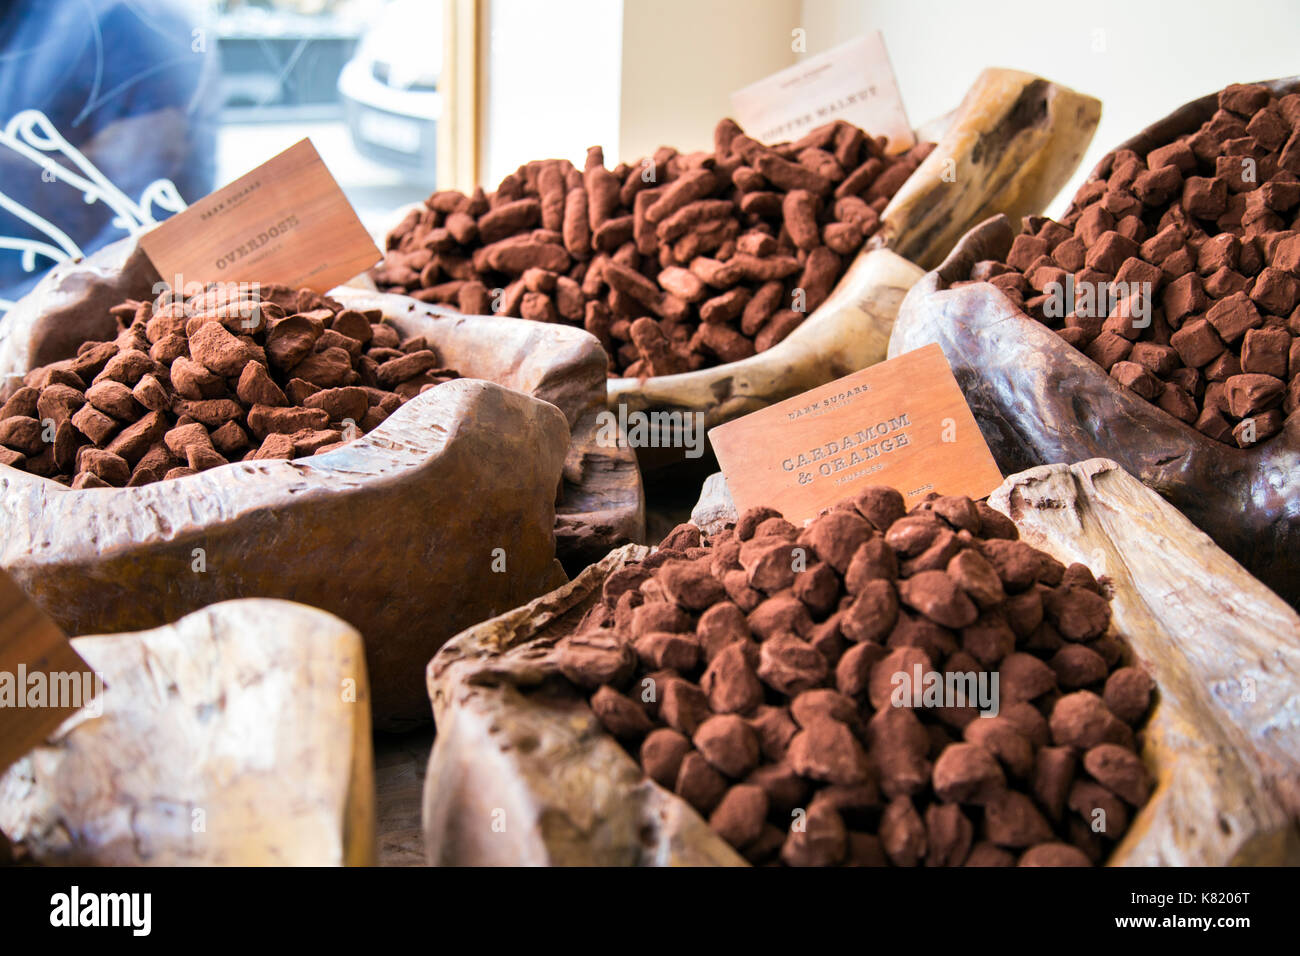 Cacao en polvo trufas en exhibición en tazones de madera oscura (azúcares Cacao House, Londres, Reino Unido) Foto de stock